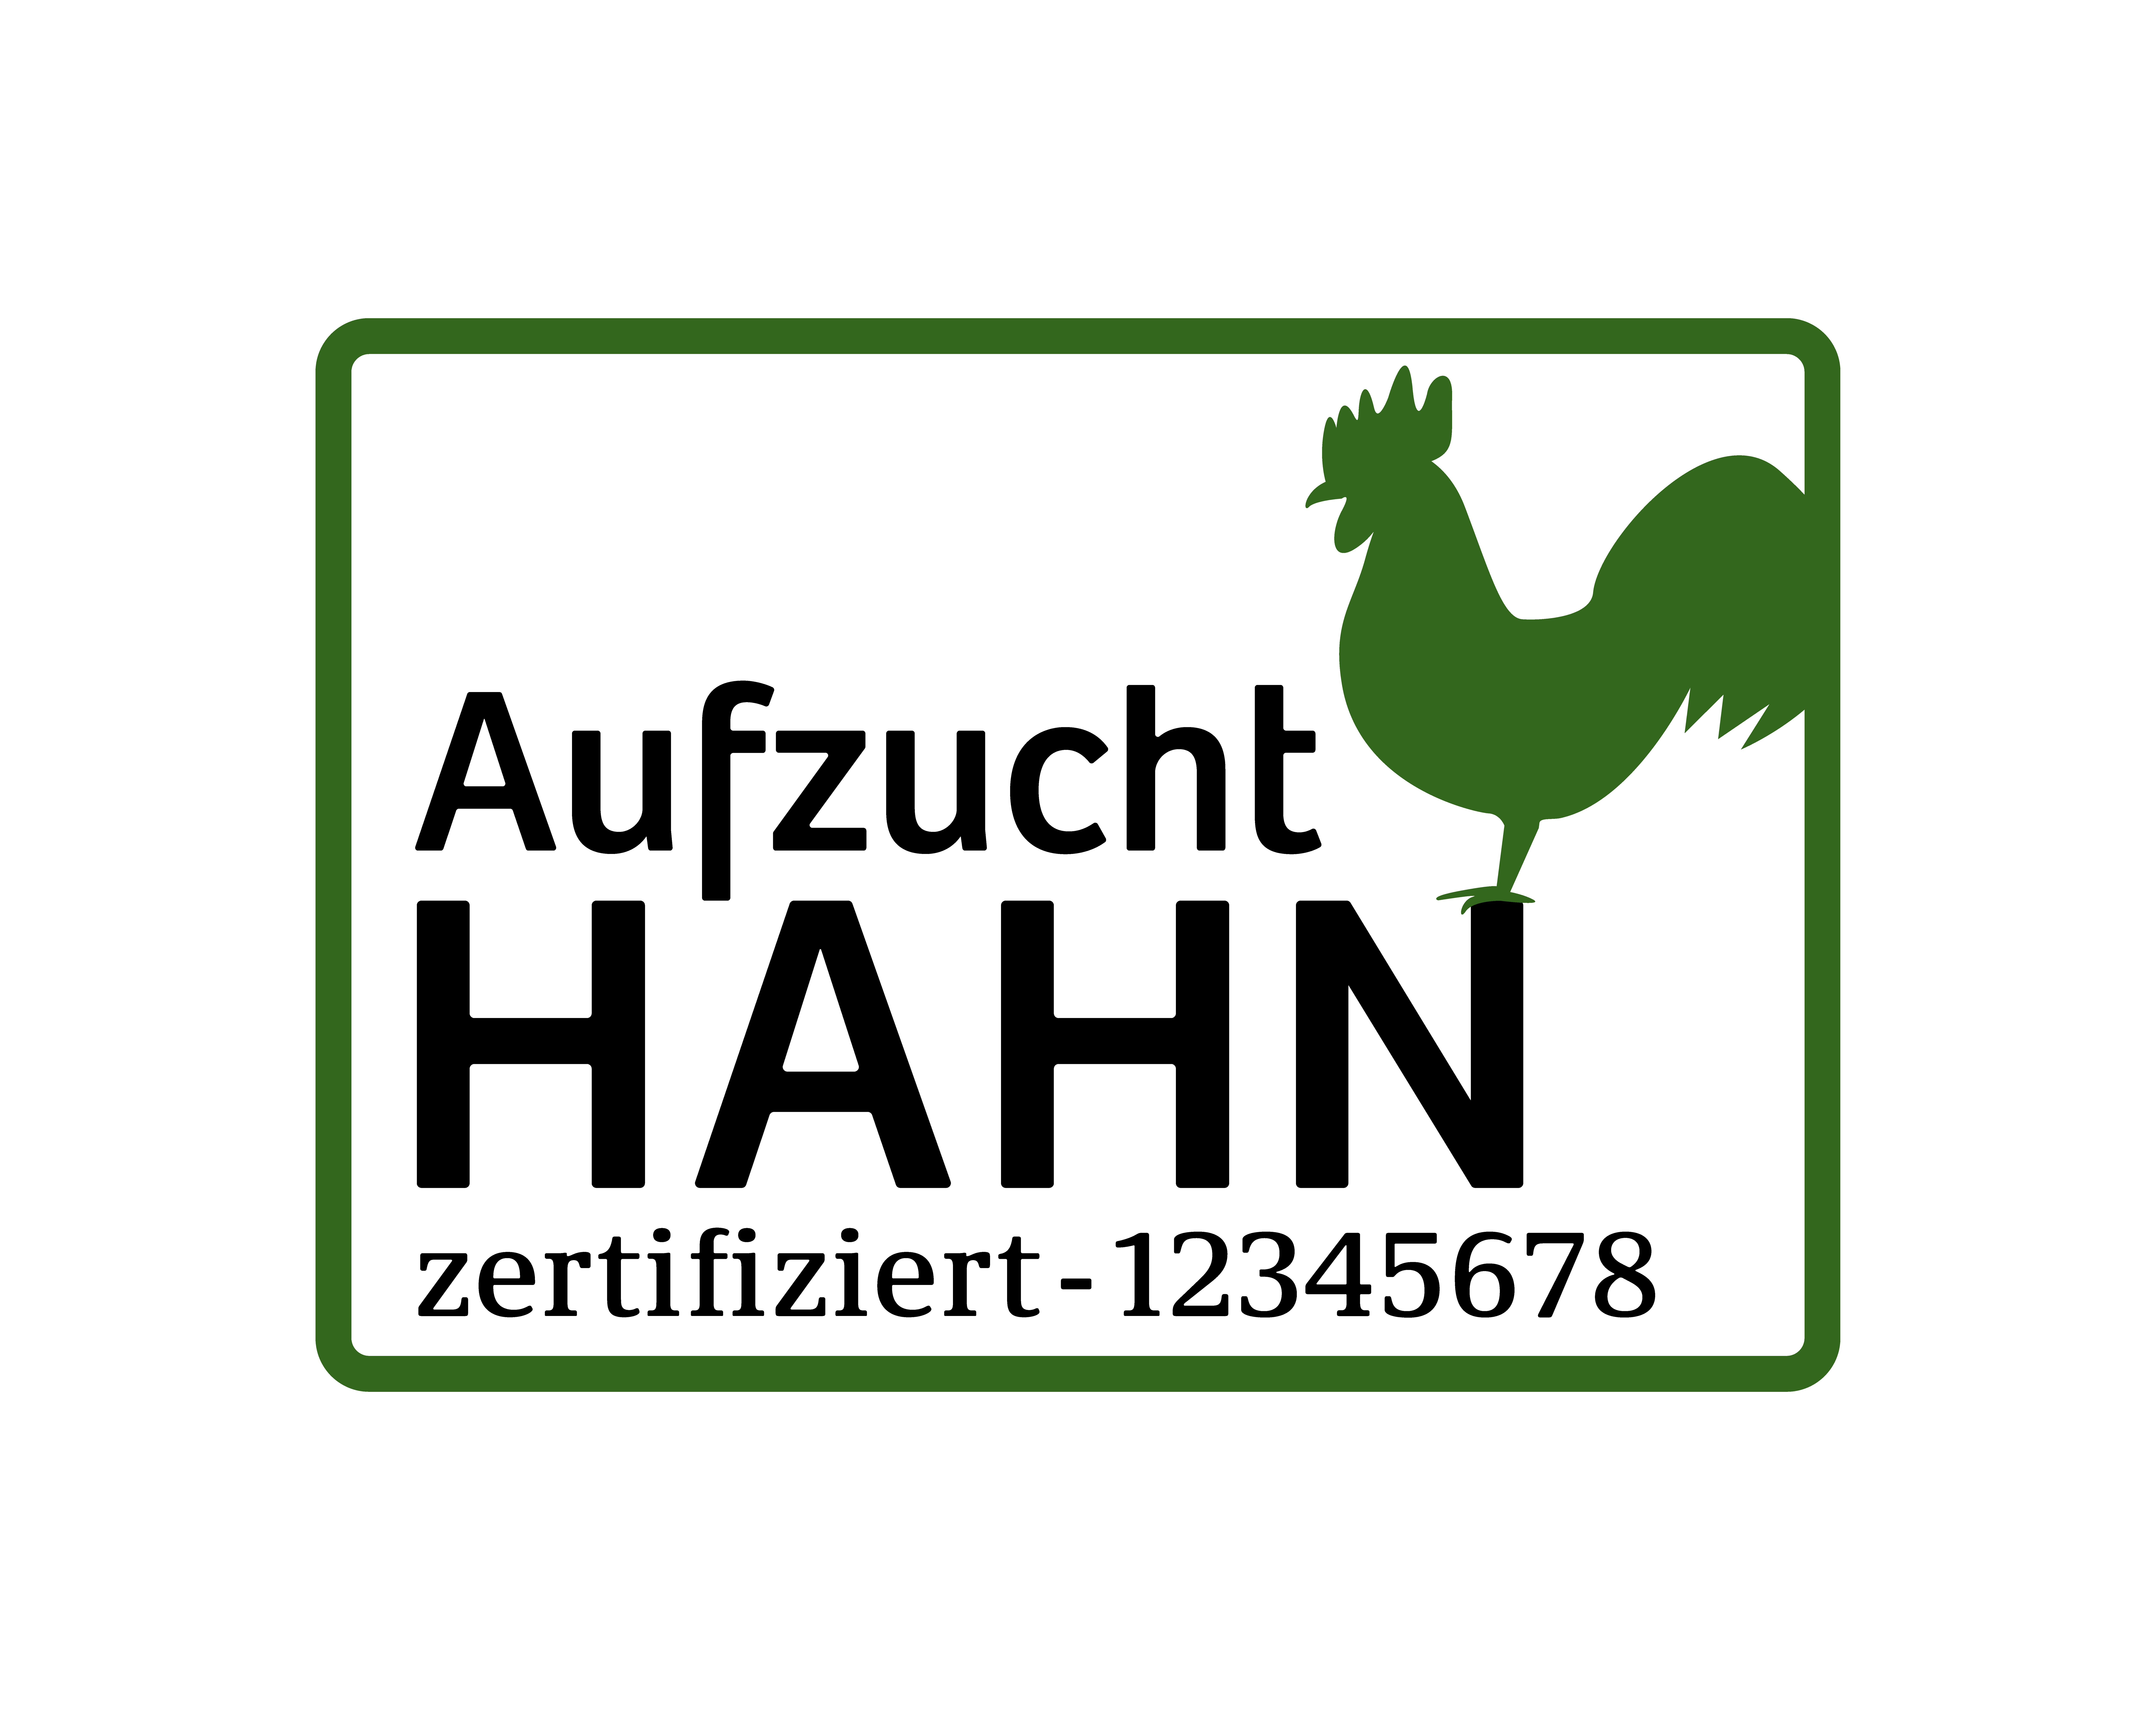 Siegel der Interessensgemeinschaft zur Hahnenaufzucht in Österreich